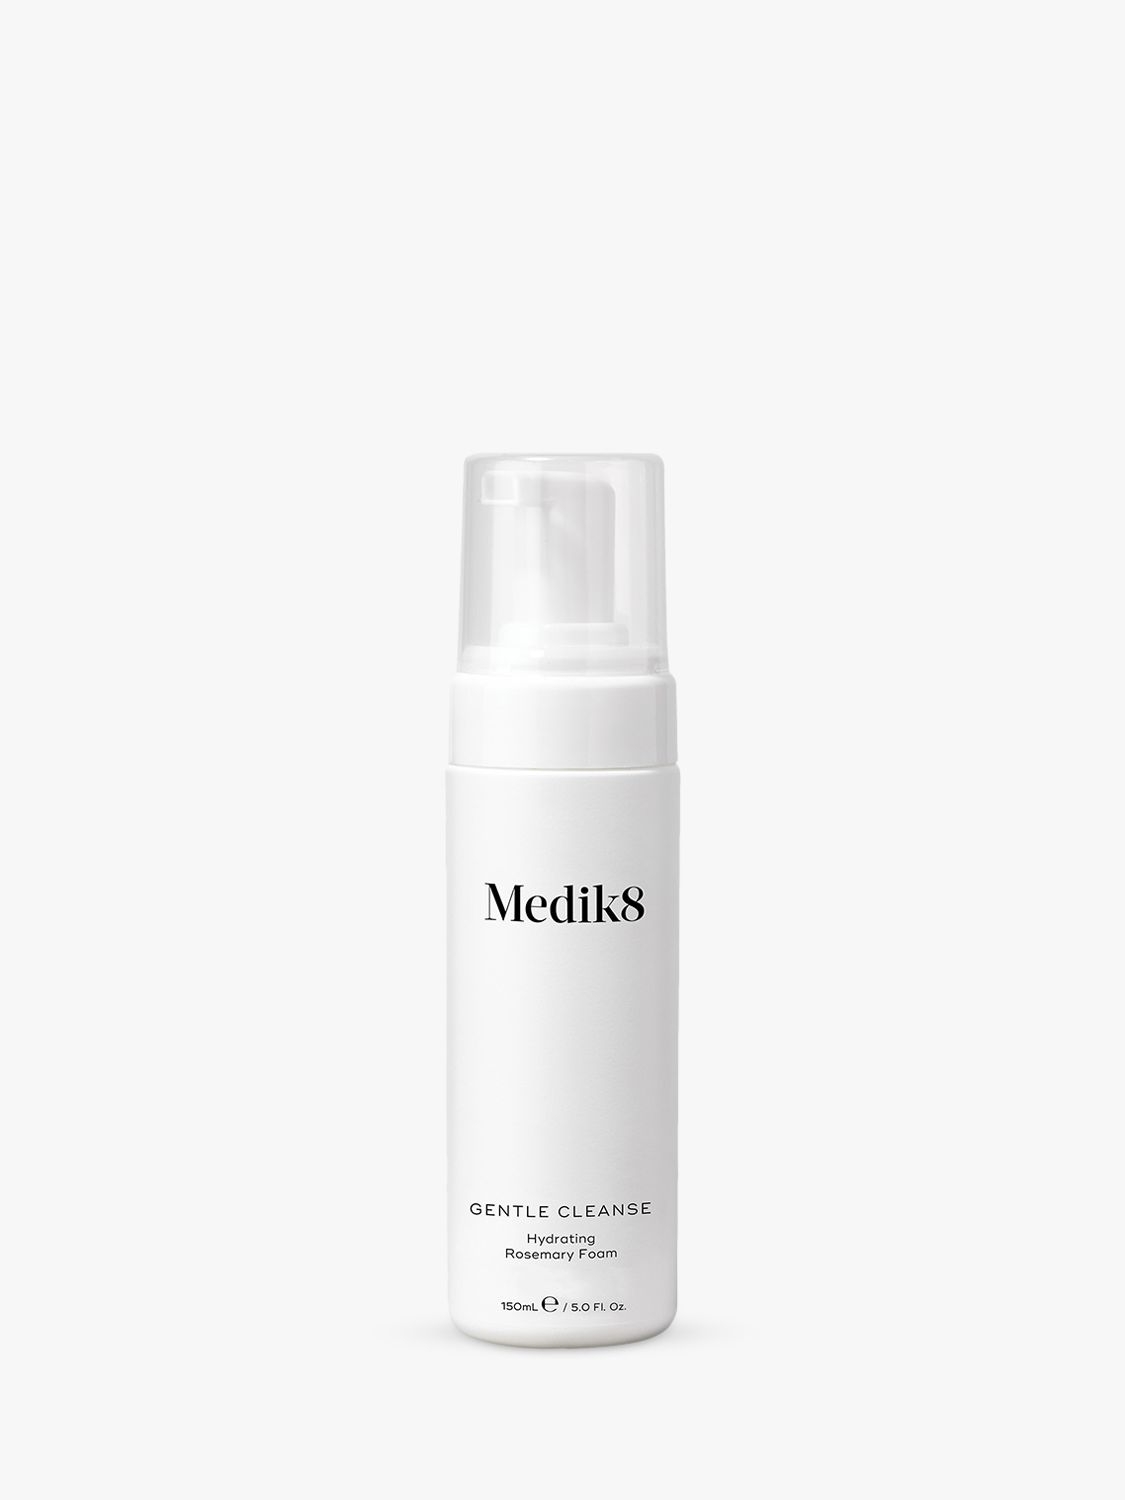 Medik8 Gentle Cleanse Hydrating Rosemary Foam, 150ml 1